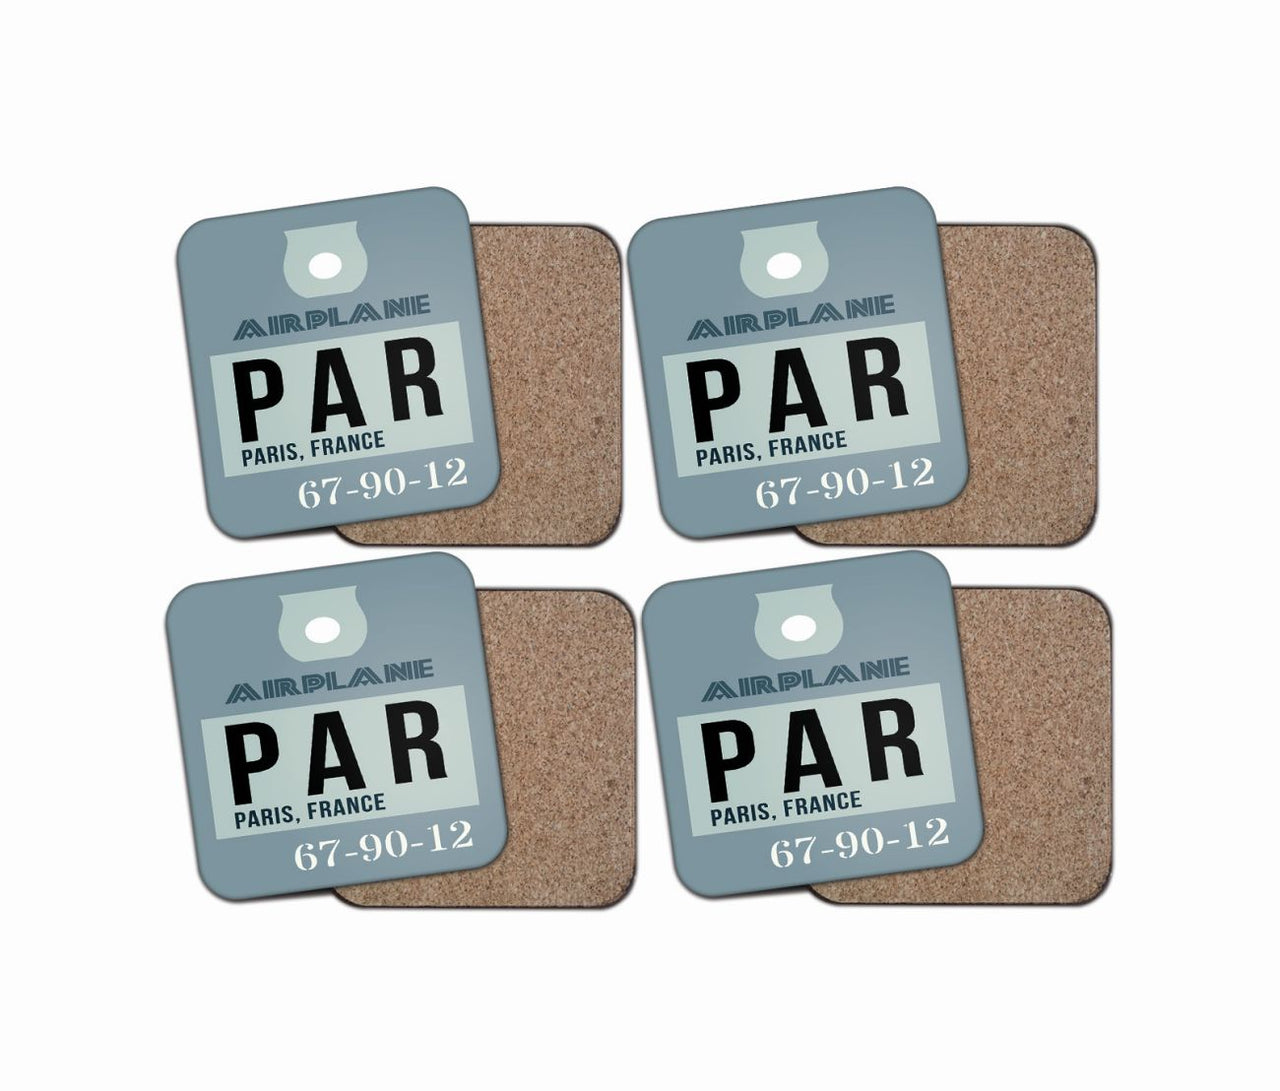 PAR - Paris France Luggage Tag Designed Coasters